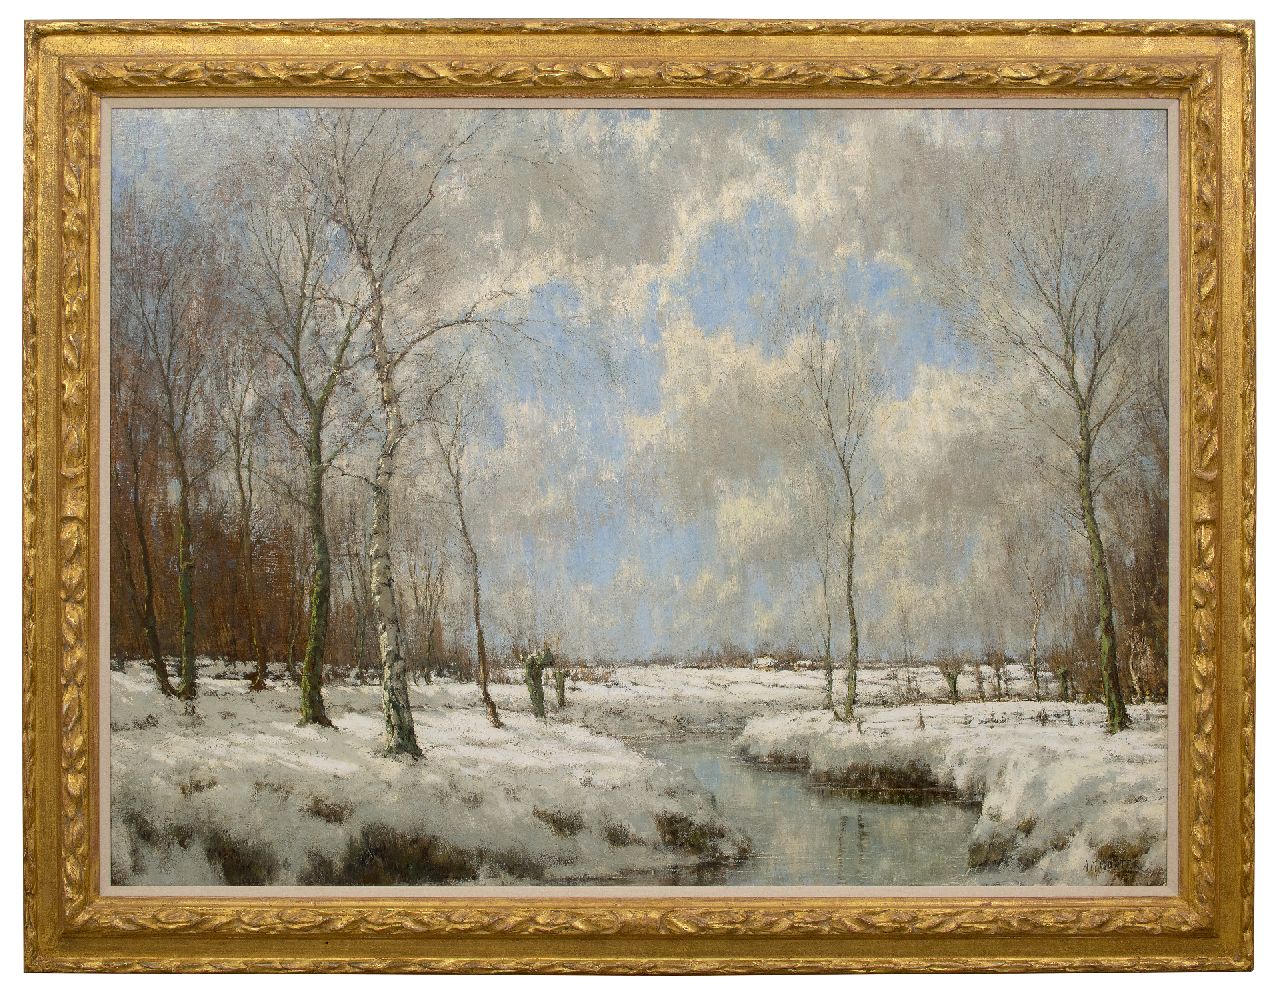 Gorter A.M.  | 'Arnold' Marc Gorter | Schilderijen te koop aangeboden | De Vordense Beek in de winter, olieverf op doek 114,9 x 154,7 cm, gesigneerd rechtsonder (tweemaal)